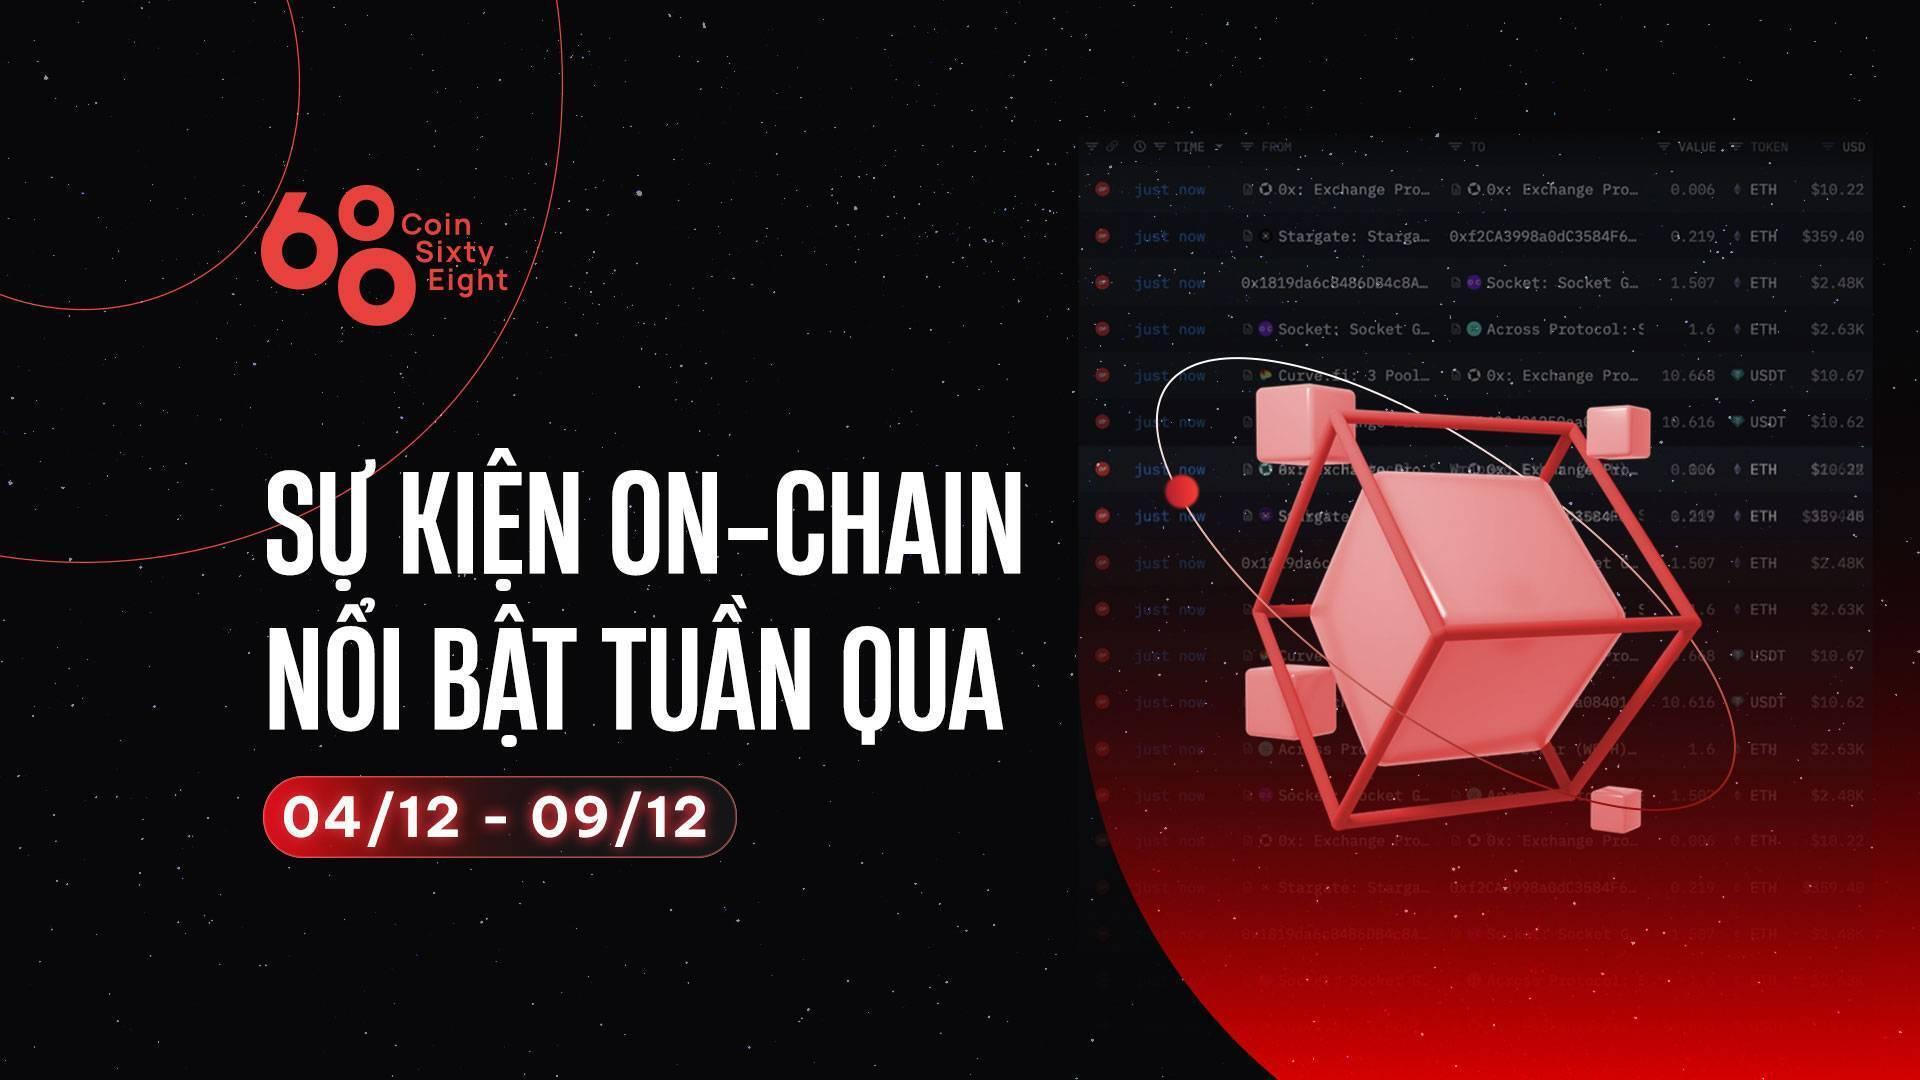 su-kien-on-chain-noi-bat-tuan-qua-0412-0912-tang-truong-btc-so-voi-tai-san-khac-hacker-kyberswap-rua-tien-cac-manh-scam-moi